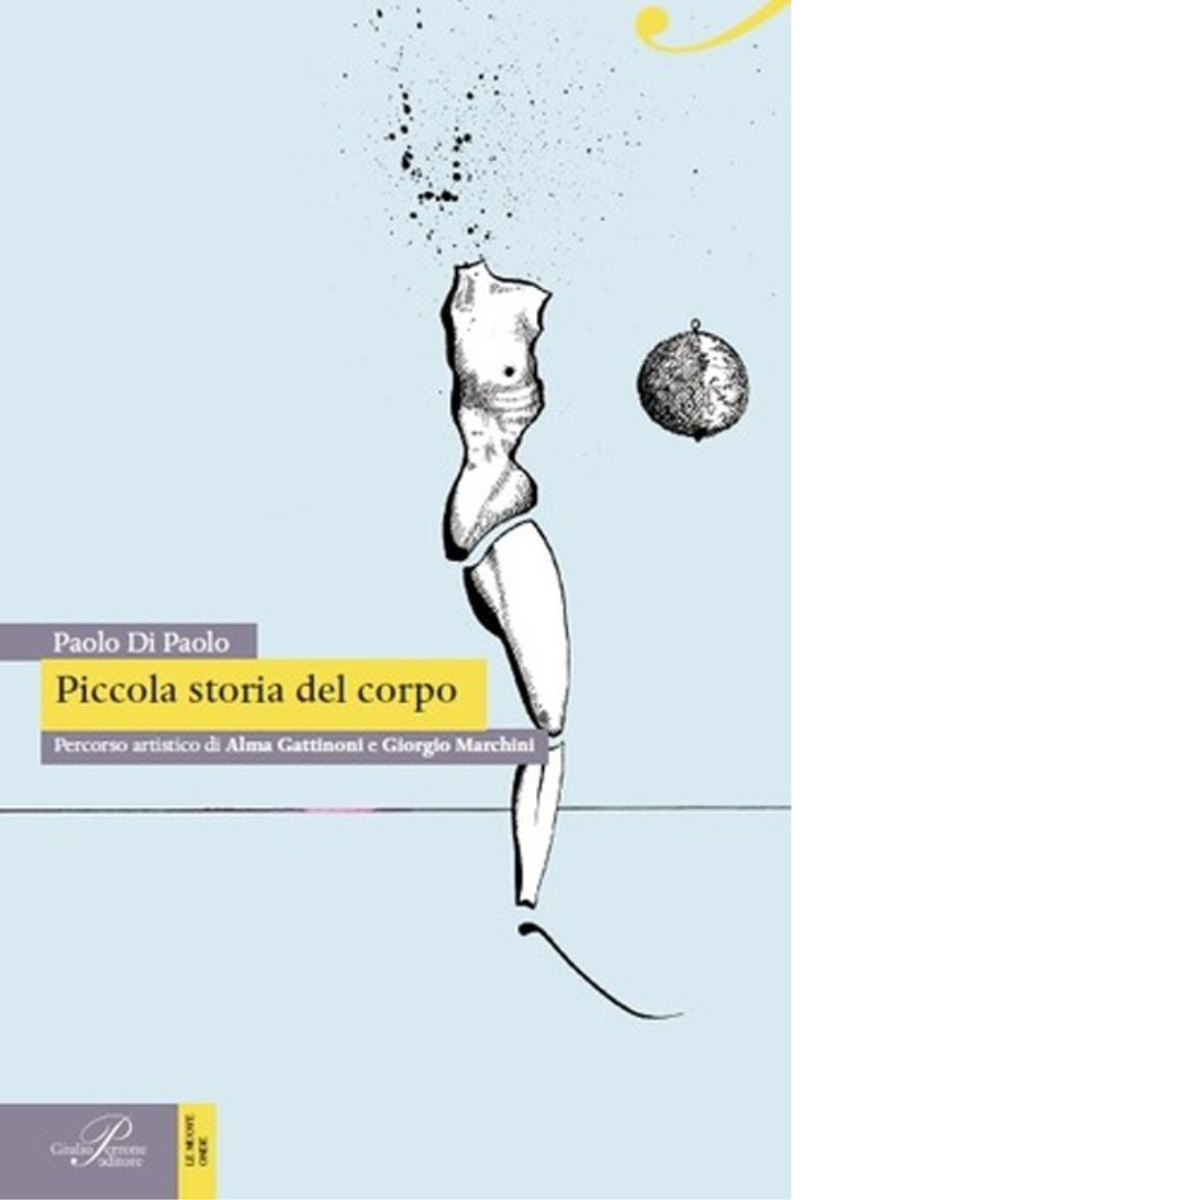 Piccola storia del corpo - Paolo Di Paolo - Perrone editore, 2014